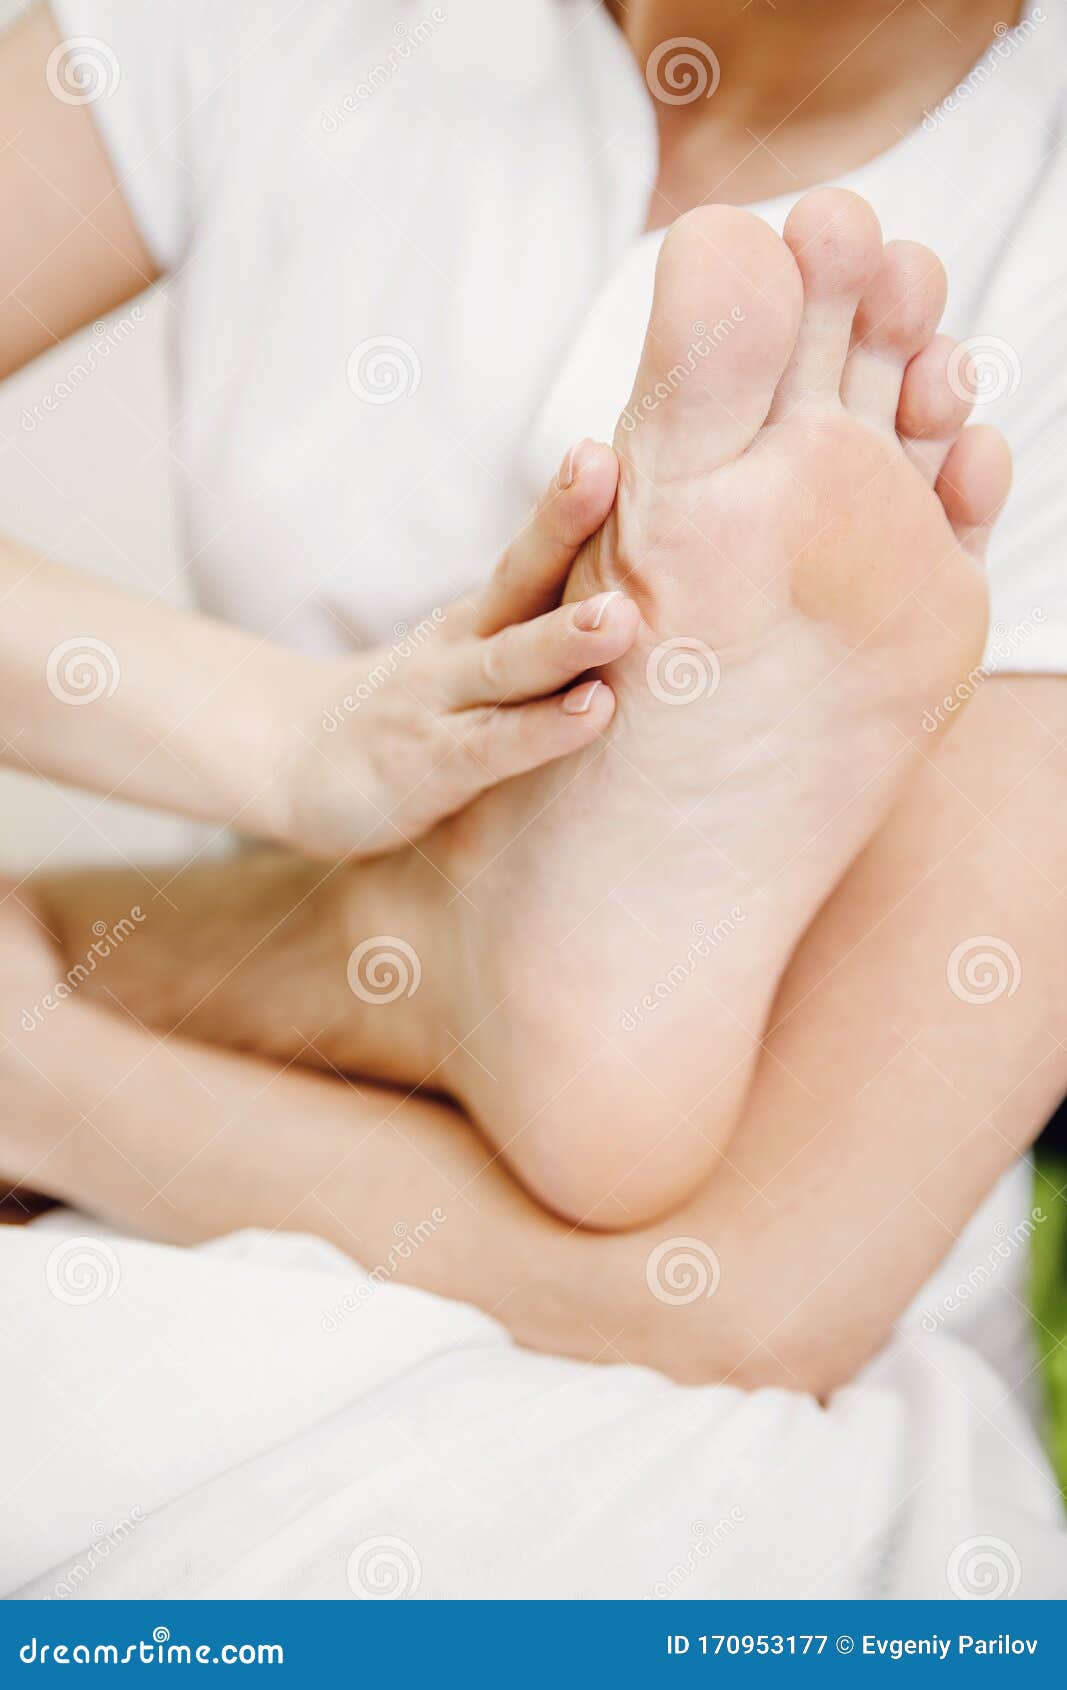 Foot And Heel Legs Massage